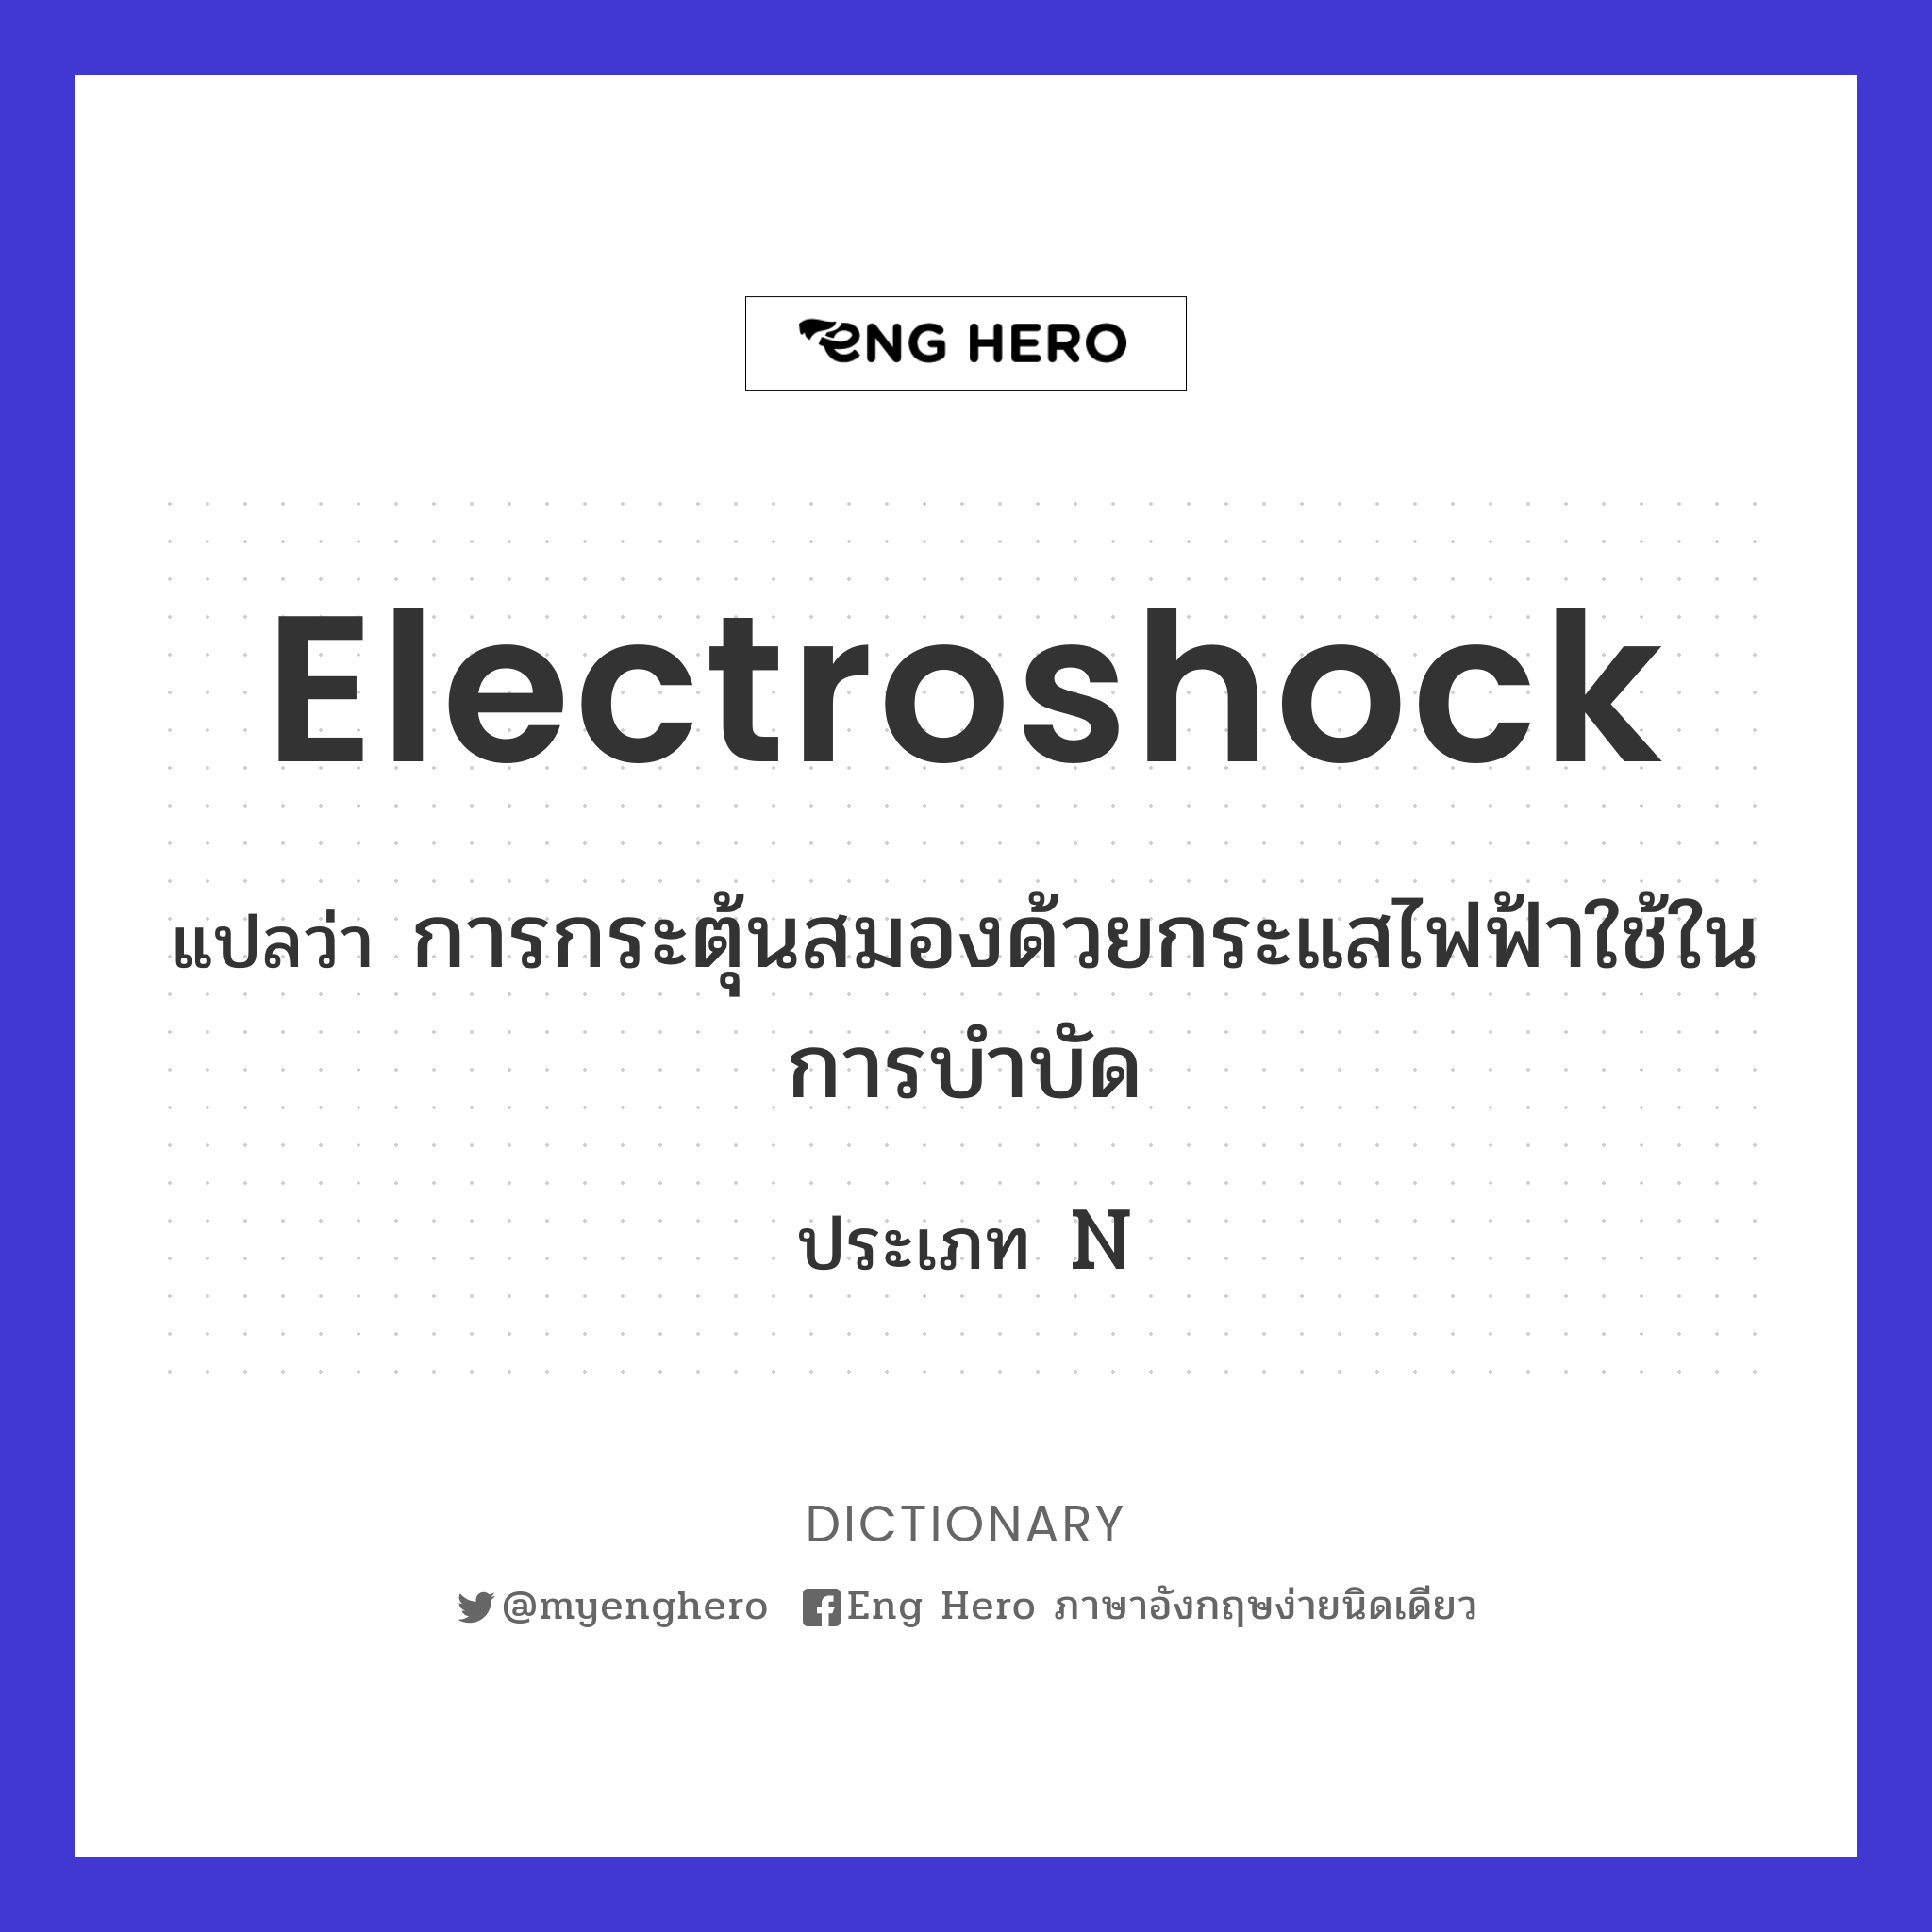 electroshock